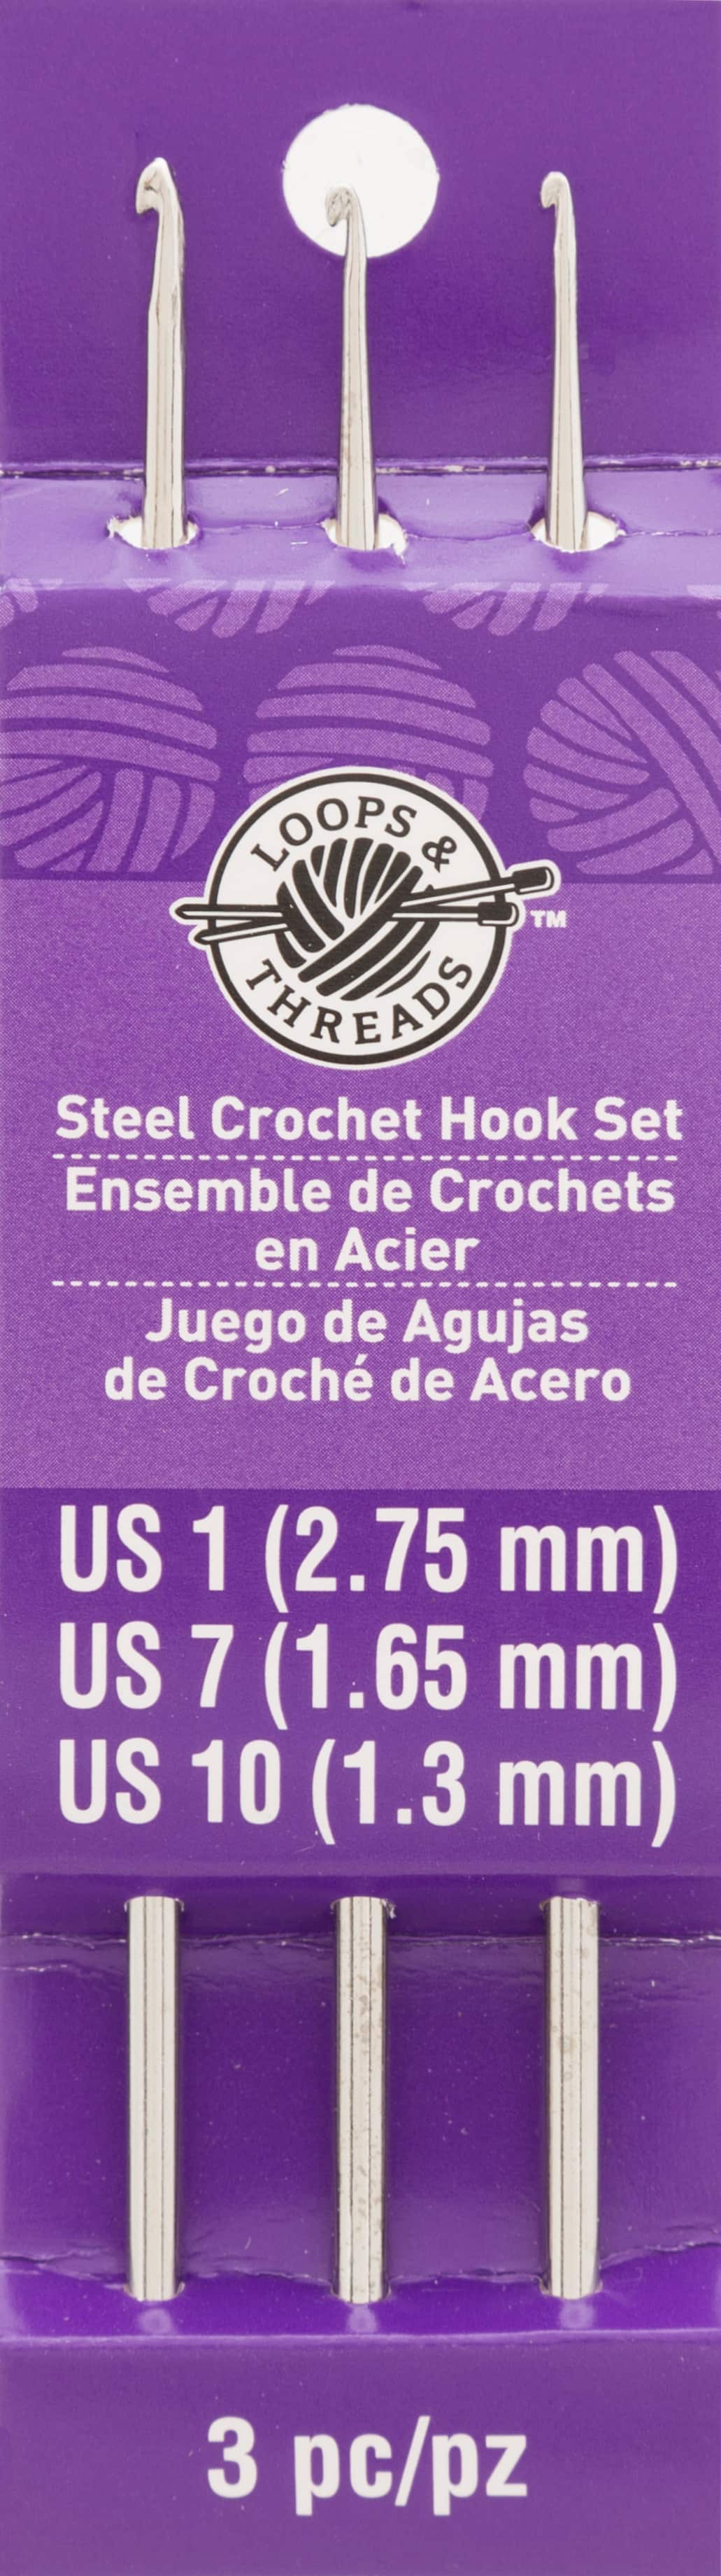 Steel Crochet Hook Set by Loops & Threads , 1/7/10